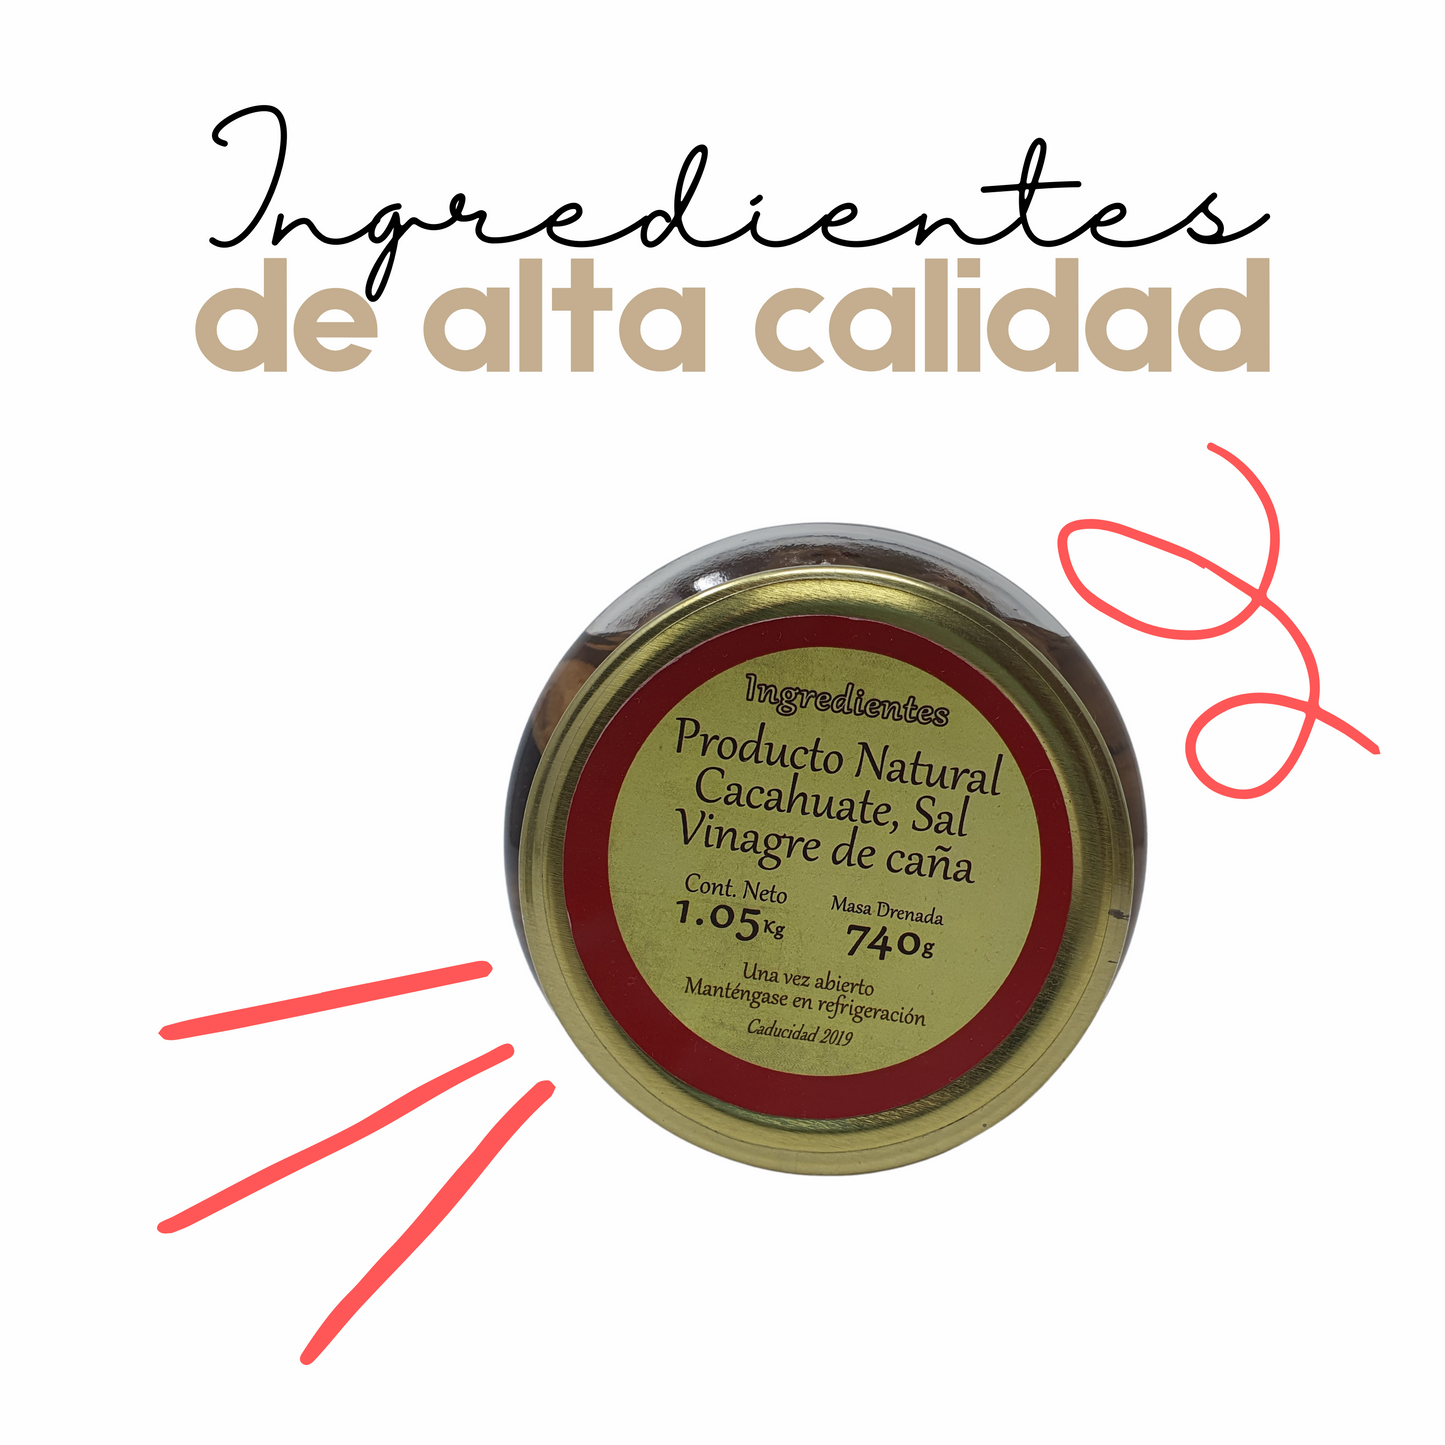 Cacahuates en Vinagre | Con Cáscara | 3 kg | Gourmet | Tradicional | Mexpofood